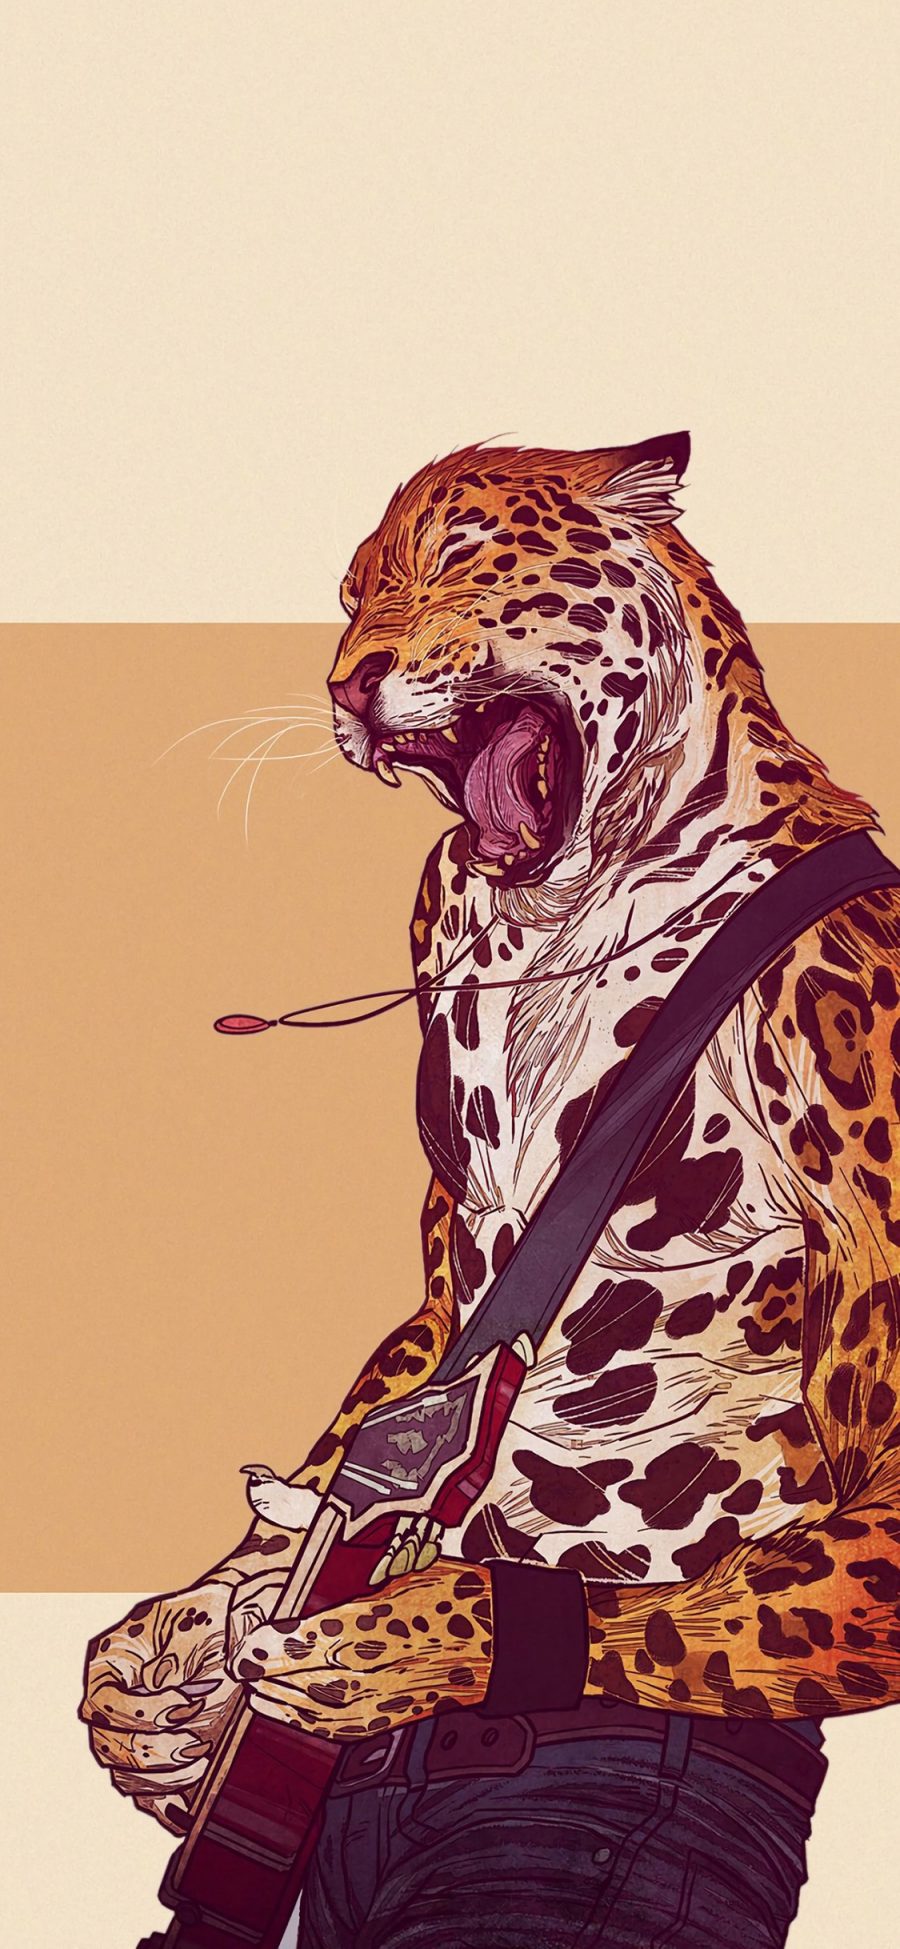 [2436×1125]动物插画 猎豹 摇滚 吉他手 苹果手机壁纸图片